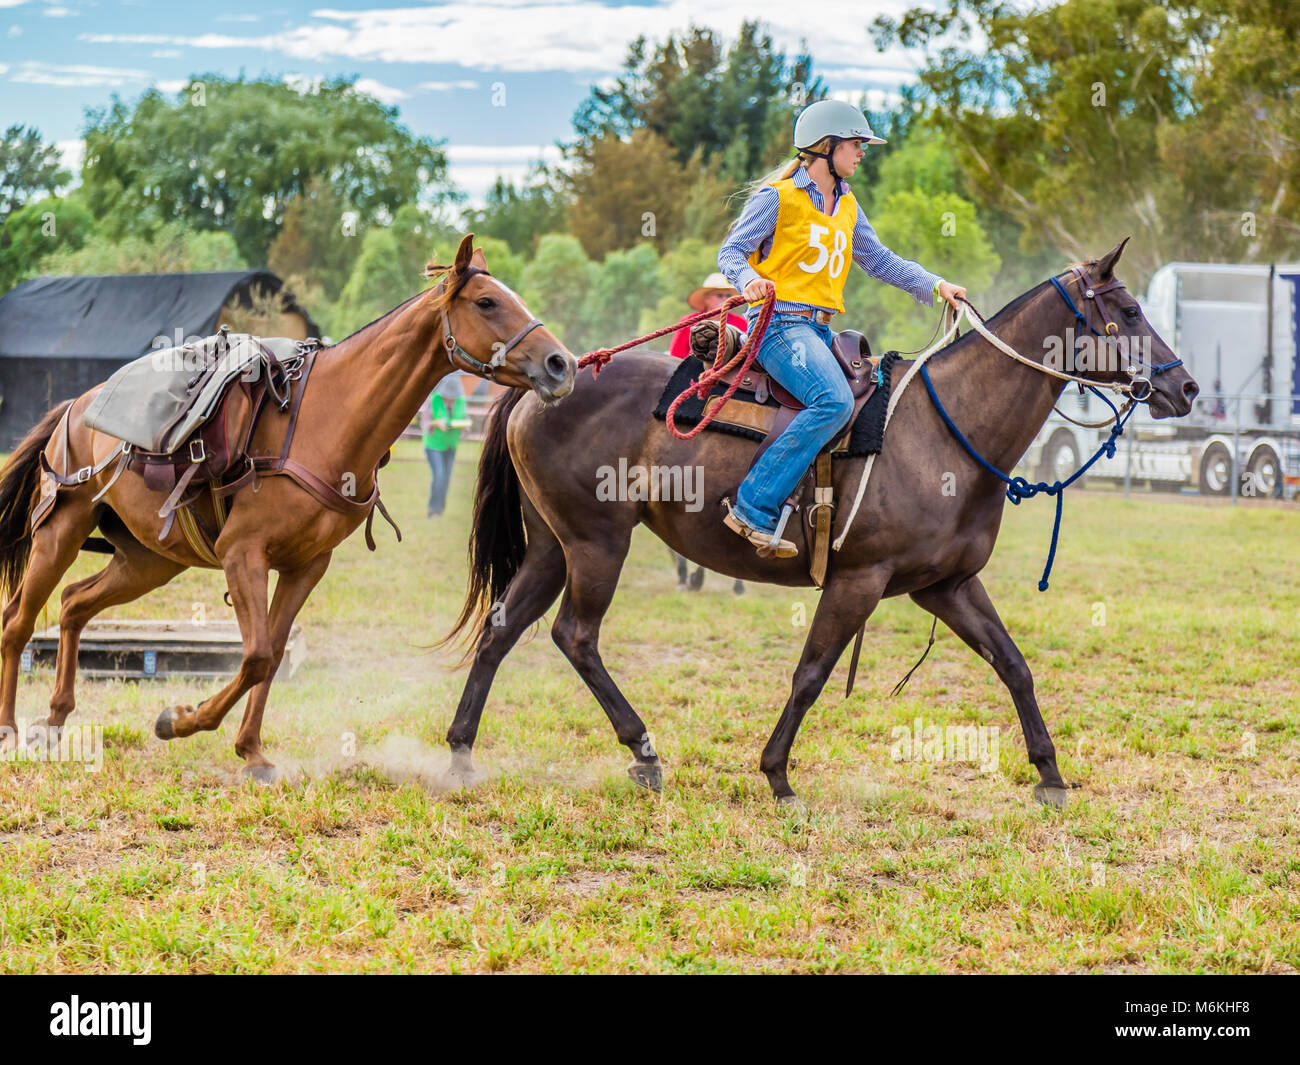 Reiter, die ein Pferd in der König der Herausforderung die Bereiche Stockman's in Murrurundi, NSW, Australien, 24. Februar 2018. Stockfoto